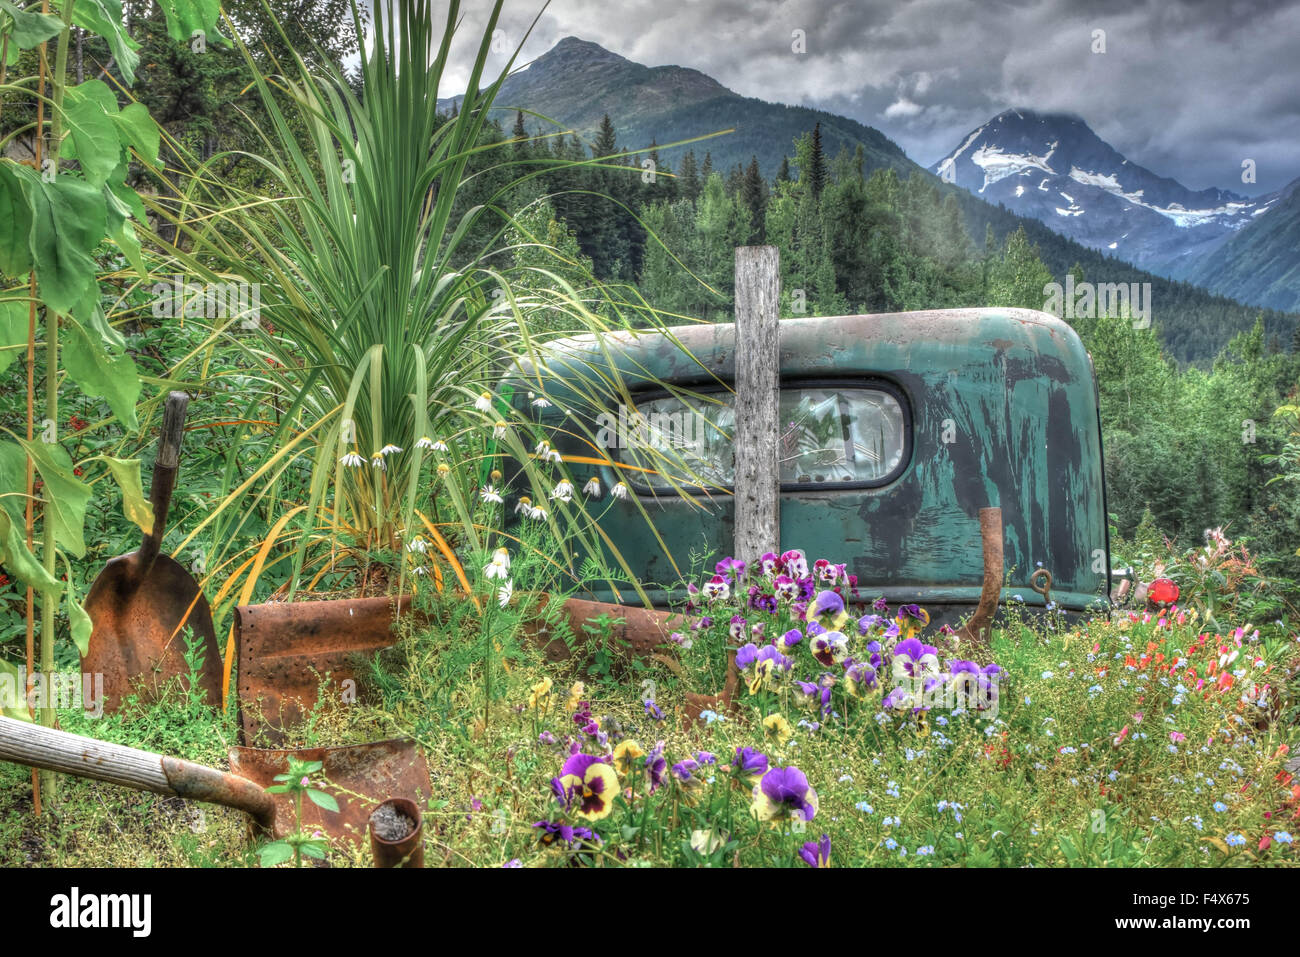 Un ancien / antique camion avec une vitre cassée est envahi de plantes et de fleurs. Une chaîne de montagnes assombries peut être vu dans la distance. Banque D'Images